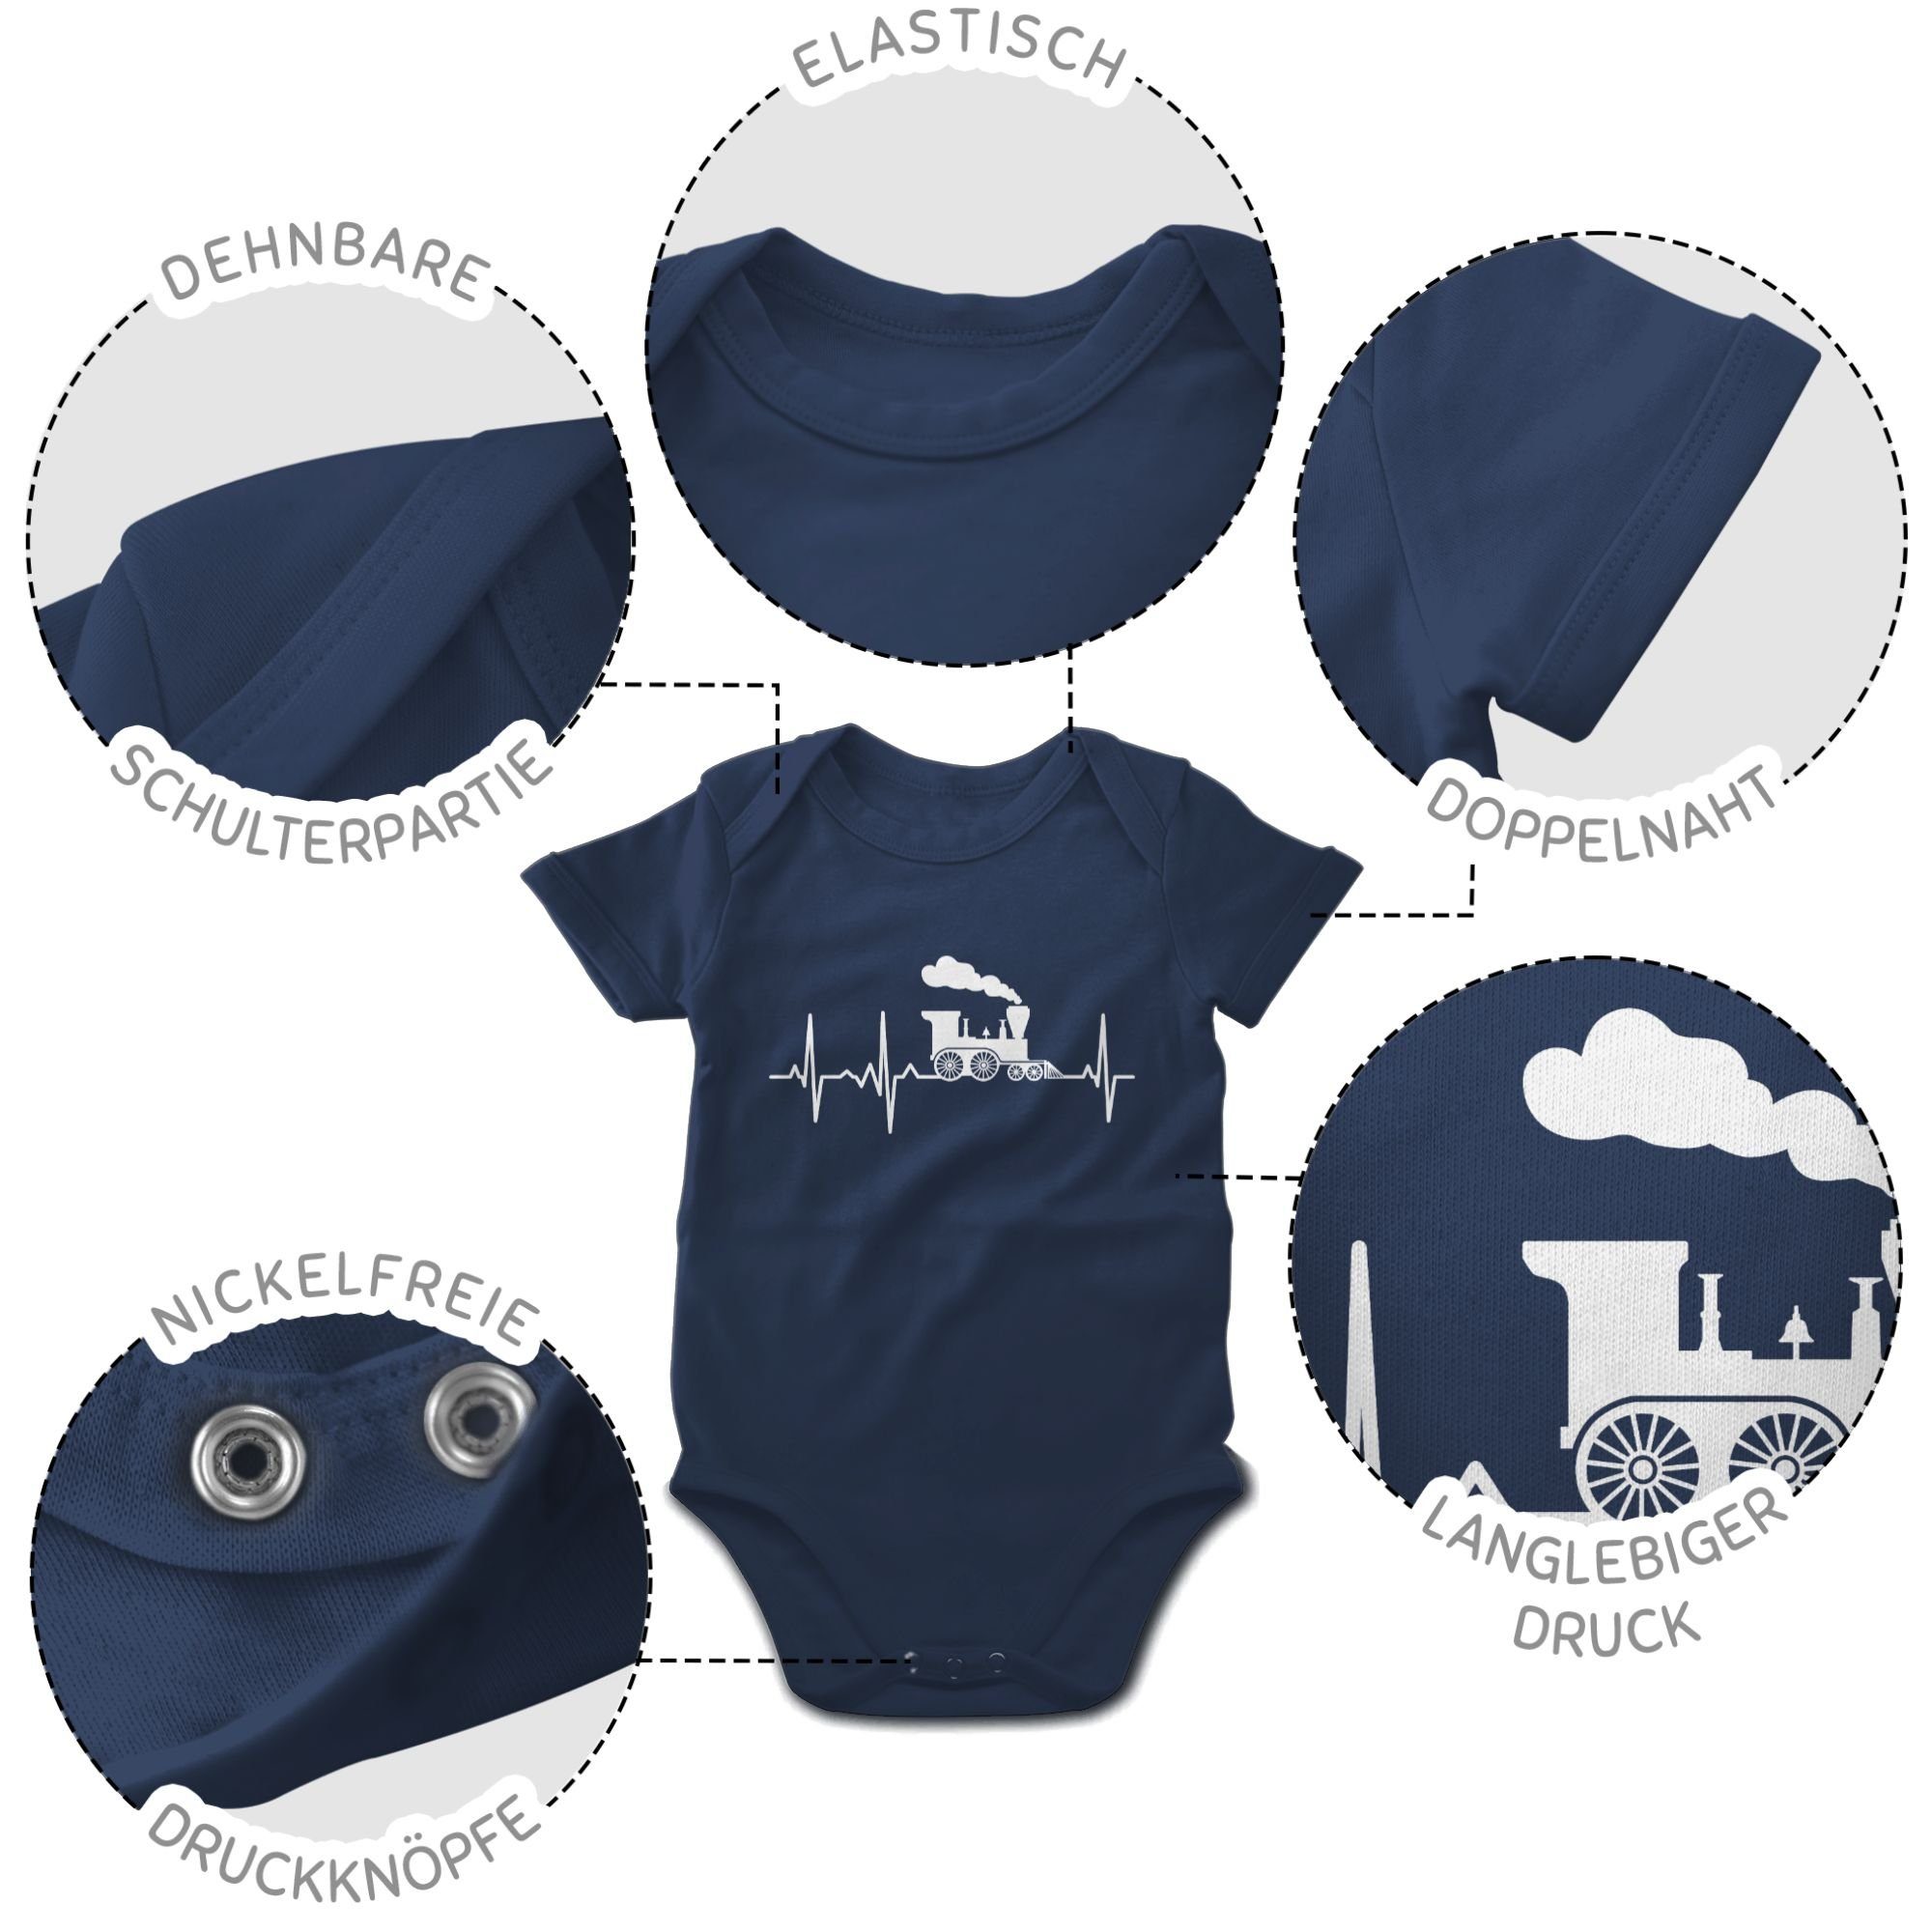 Co. weiß Shirtracer Dampflok Traktor Baby und Blau Bagger Navy Shirtbody 1 Herzschlag